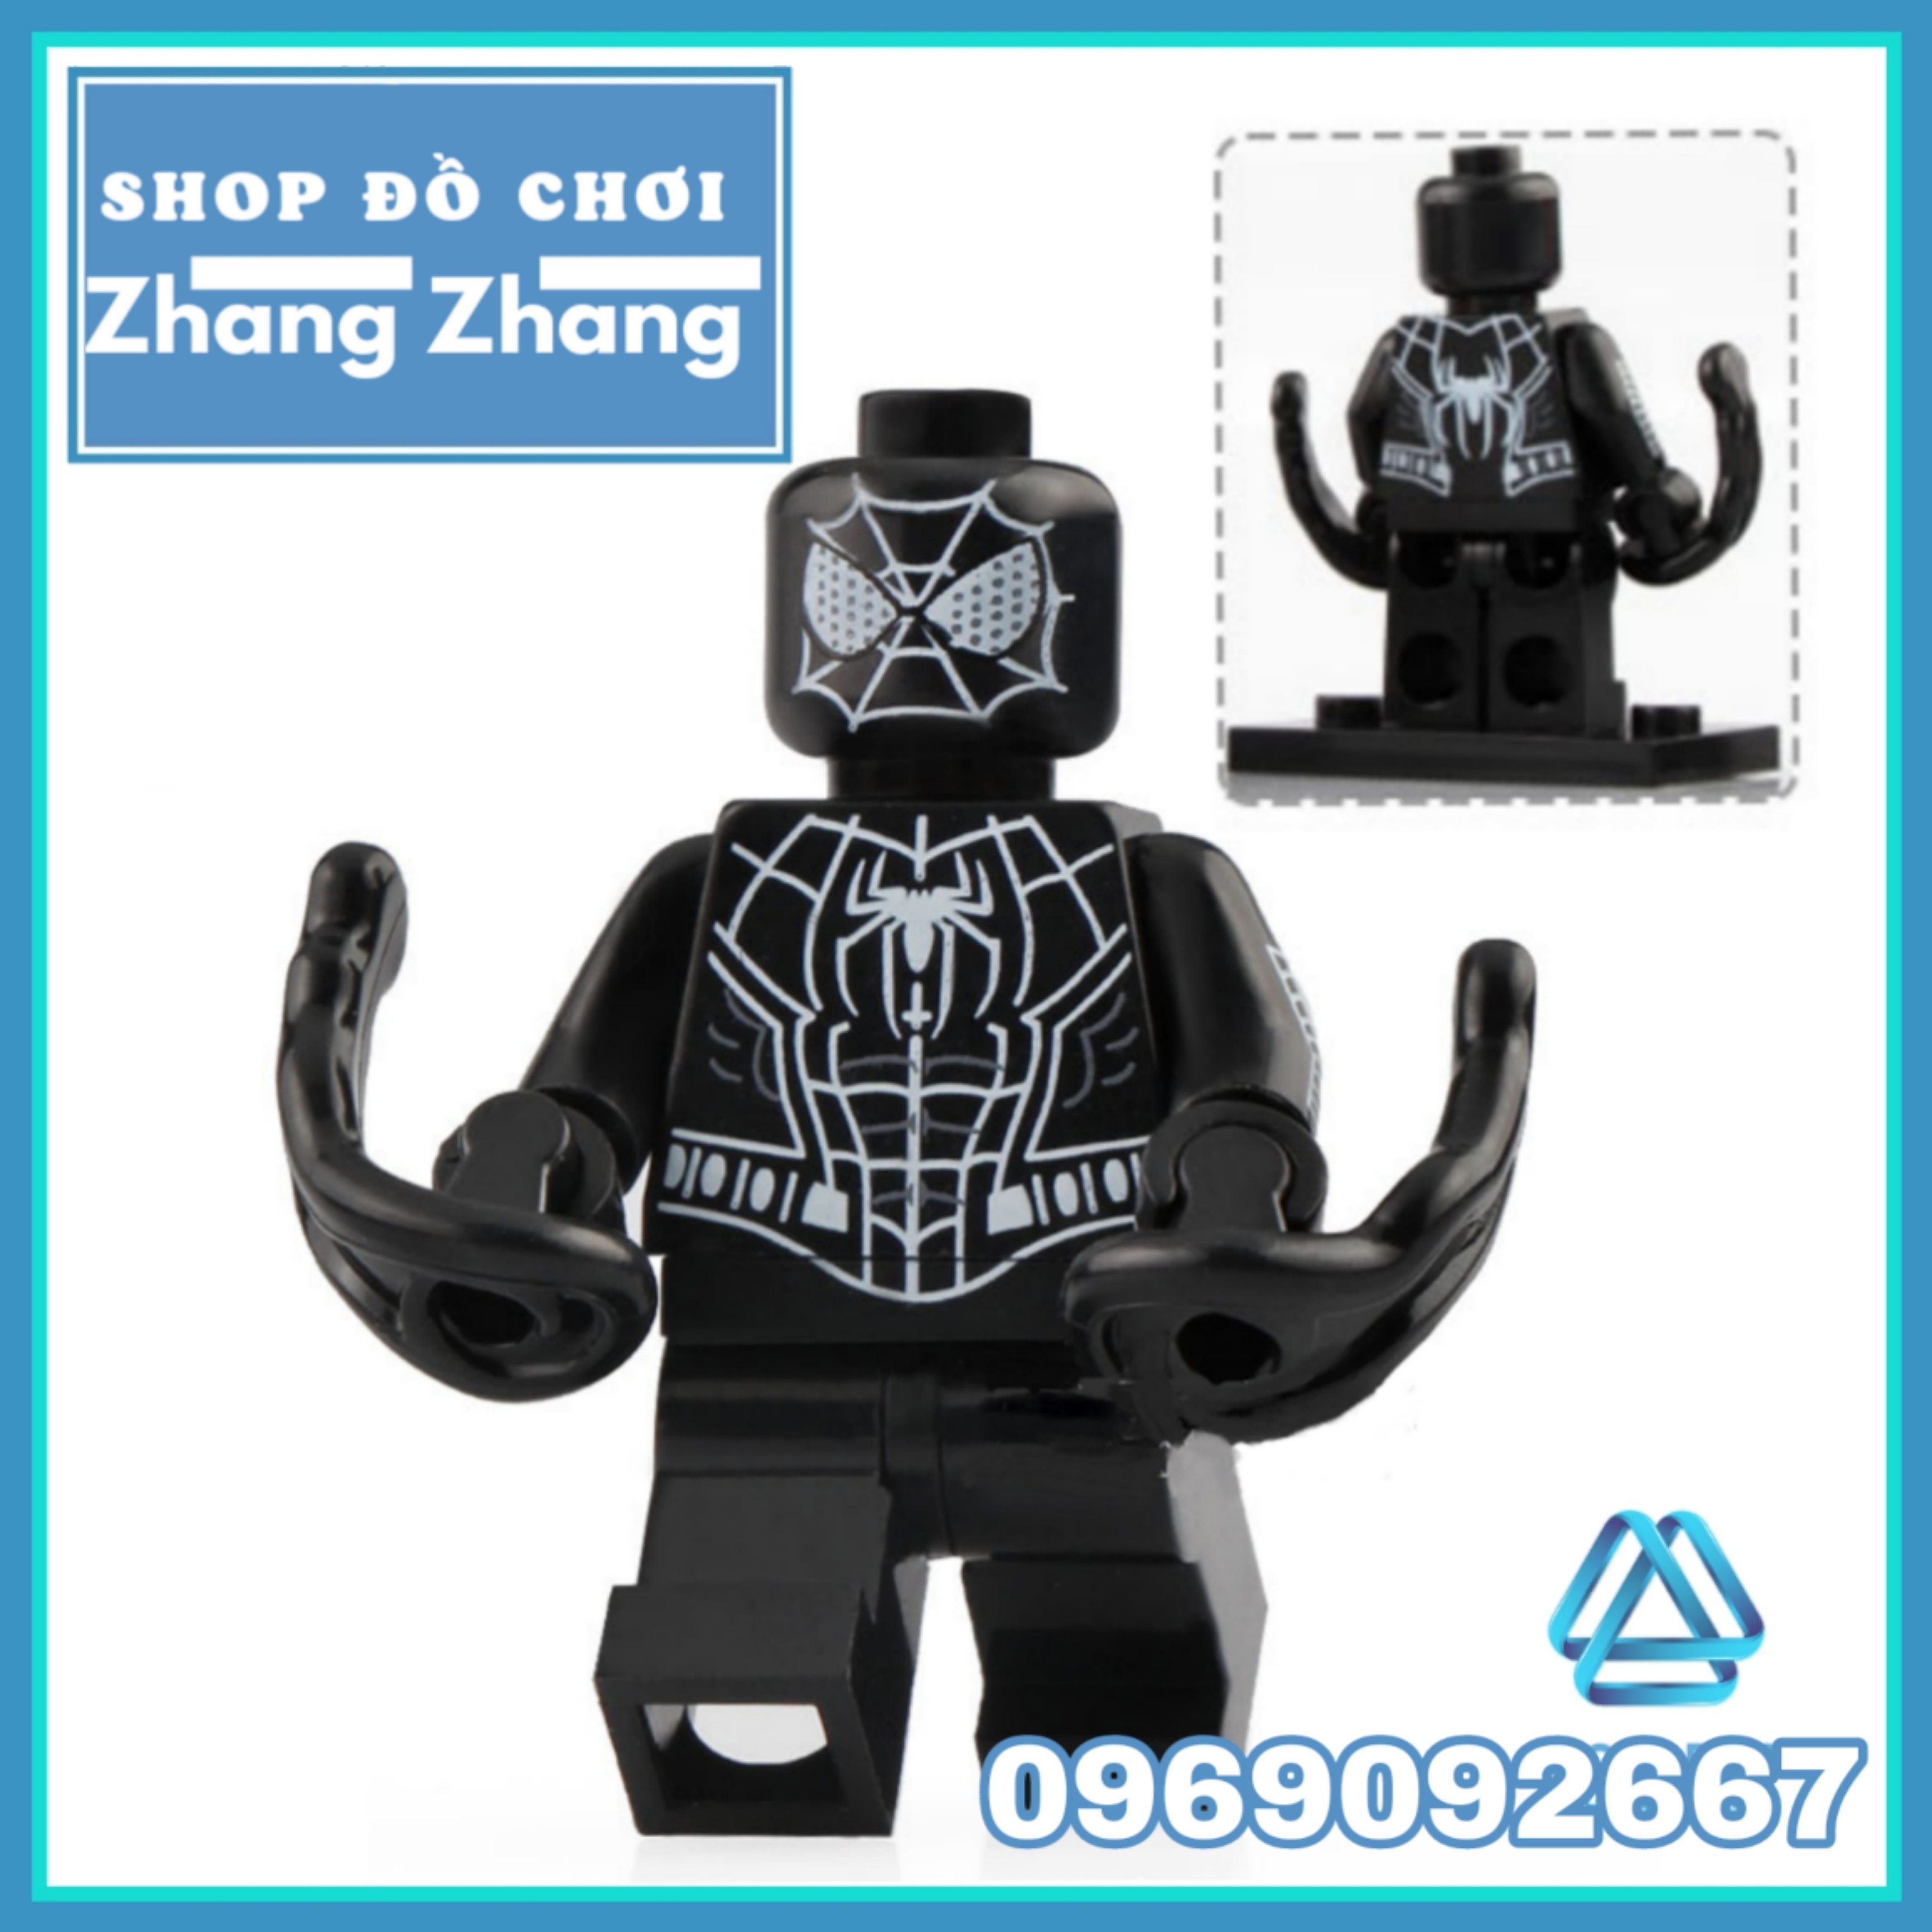 FREESHIP MAX] Xếp hình Spider-Man Deadpool Domino Venom Cable Warhead  Negasonic siêu anh hùng Marvel Lego Minifigures Xinh x0166 [Shop Đồ Chơi  Zhang Zhang] 